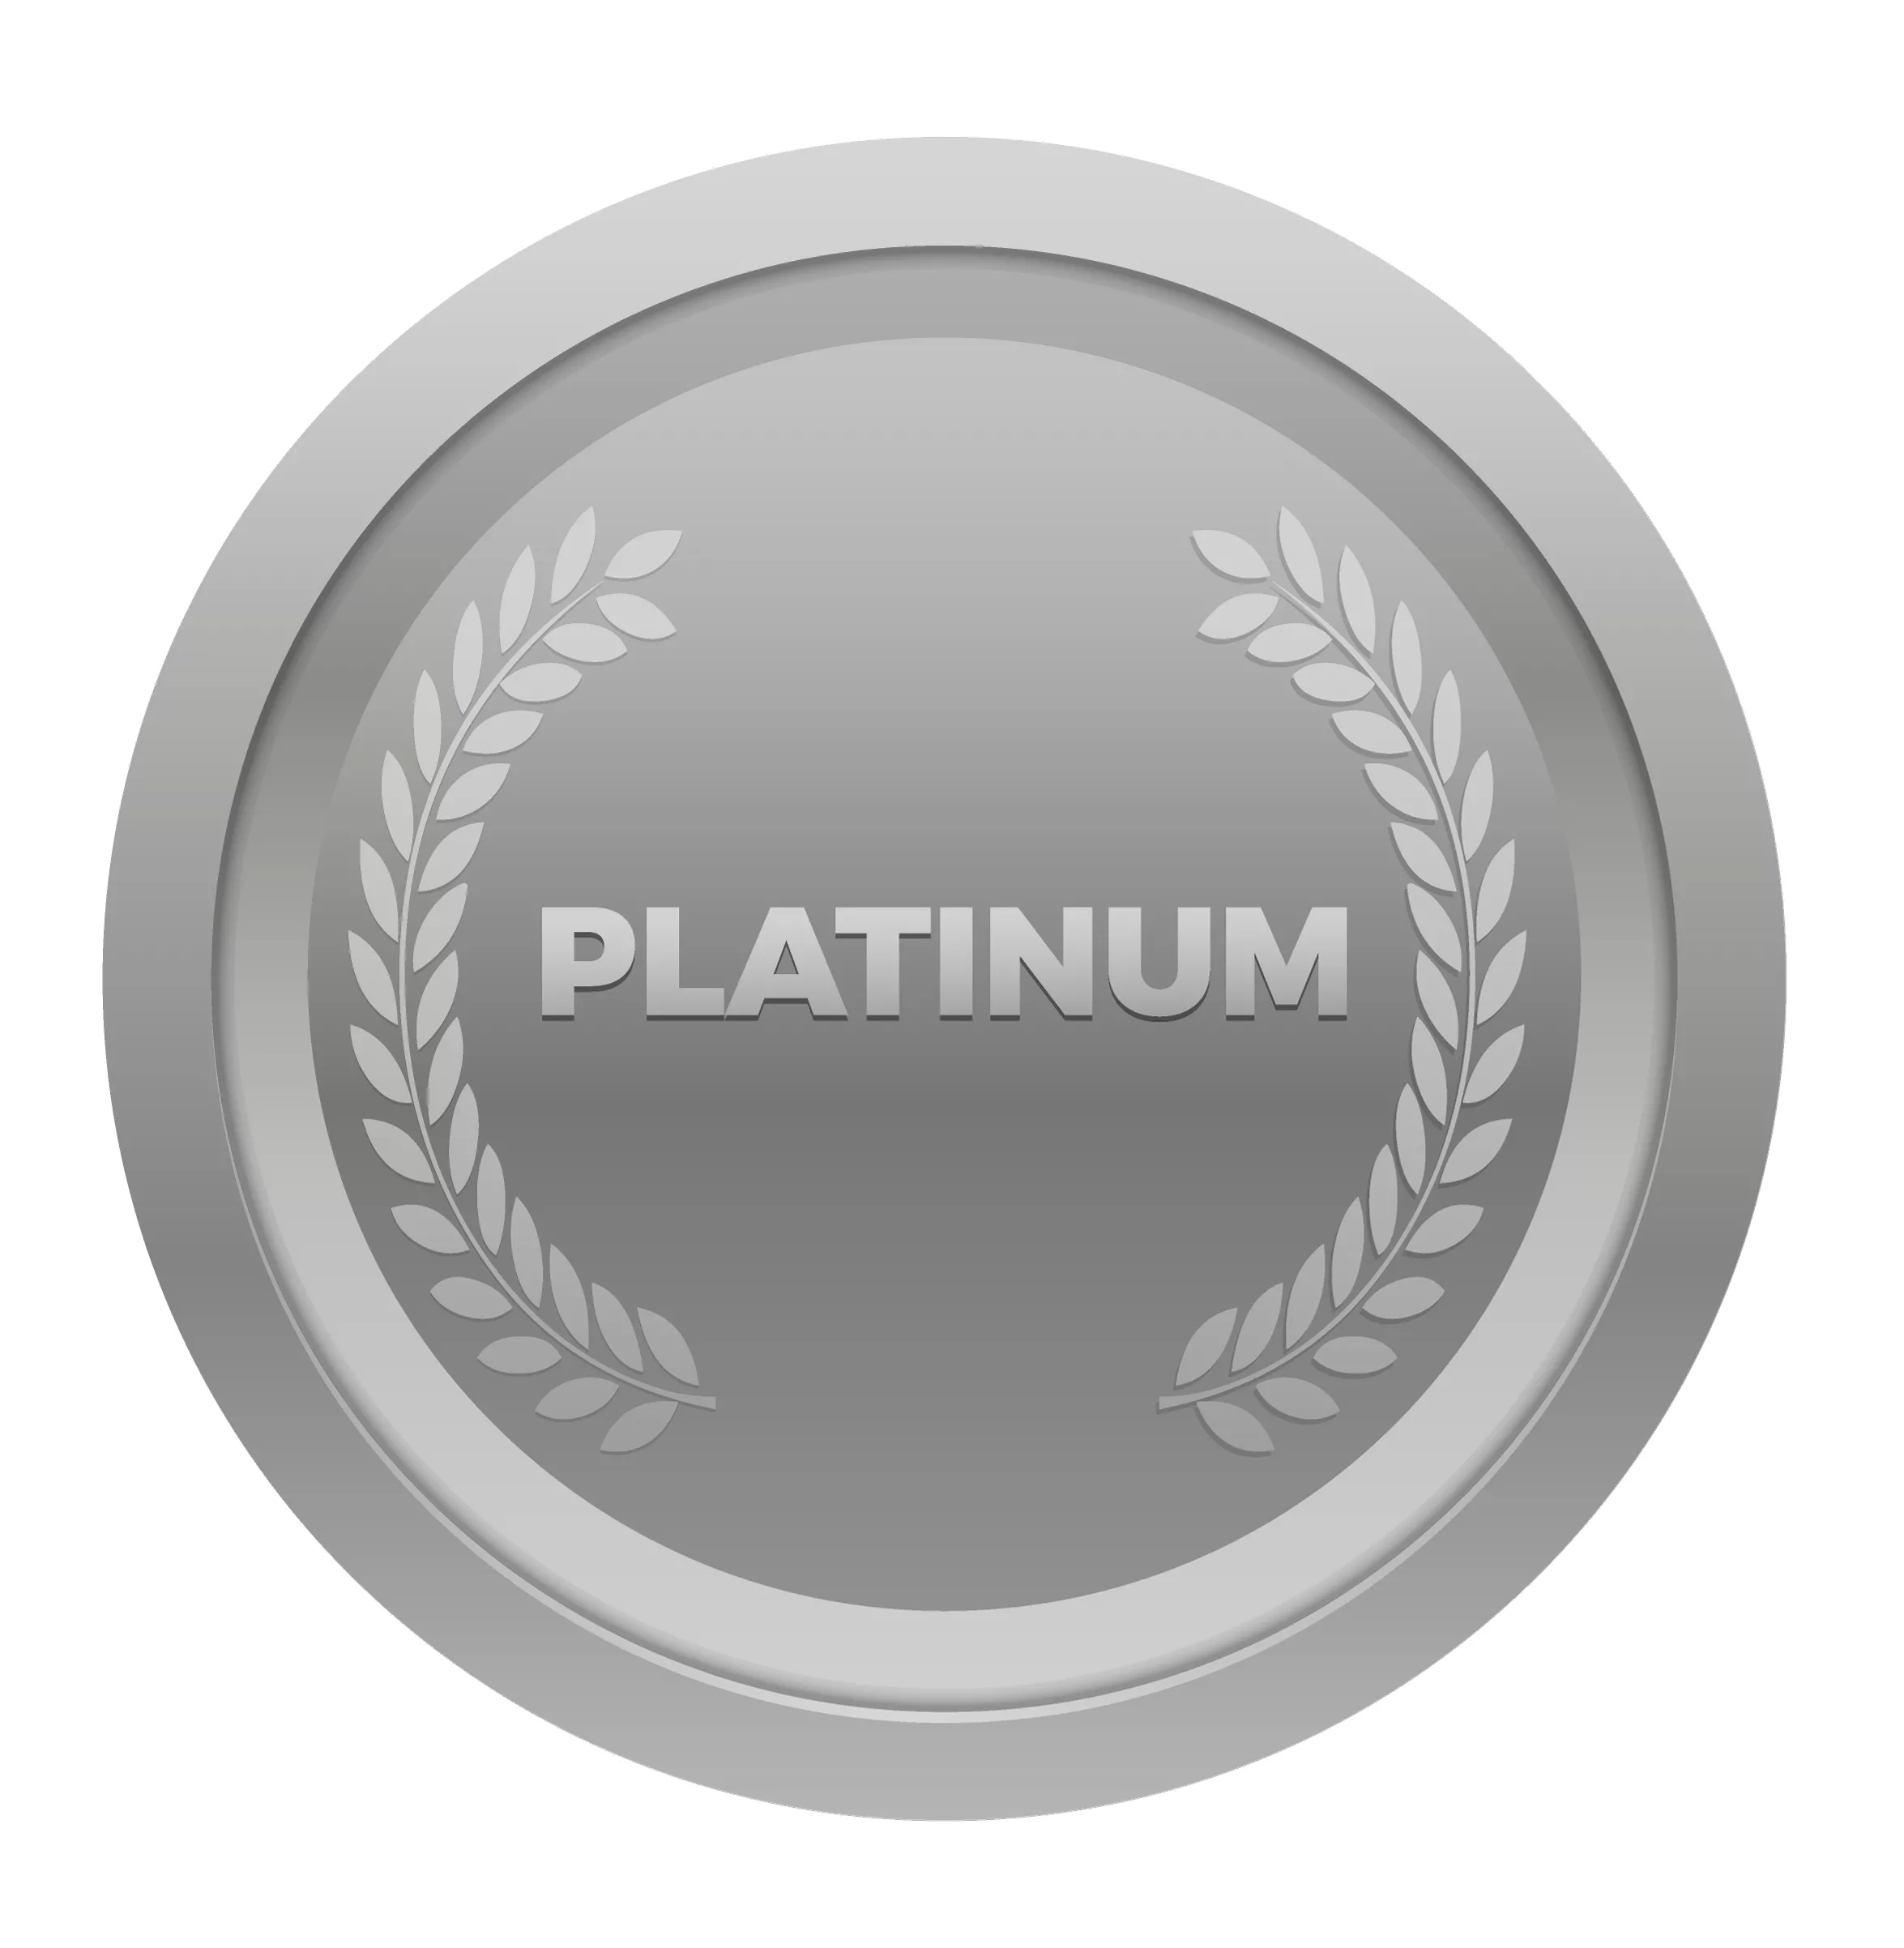 Platinum Package